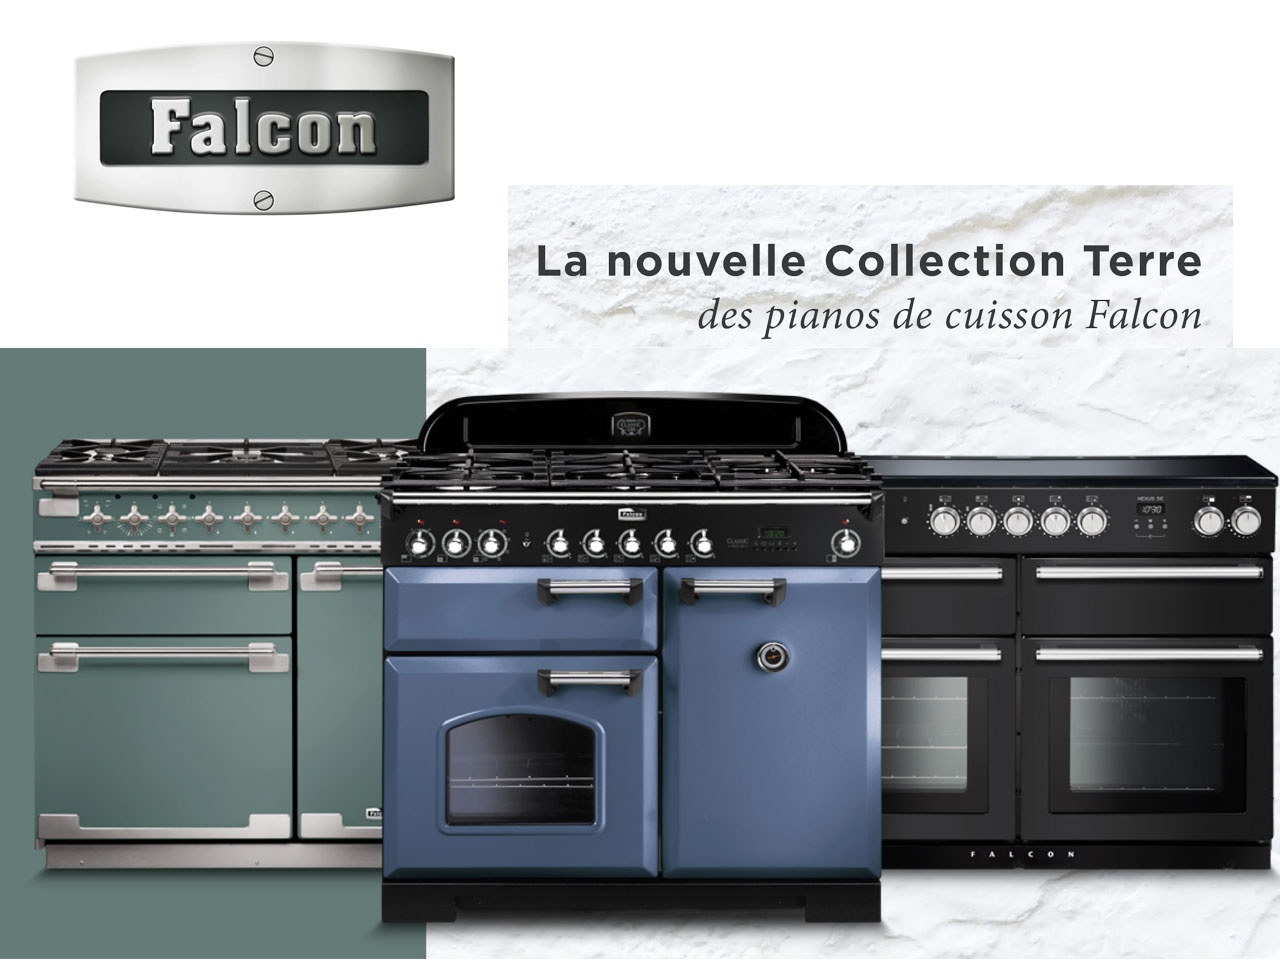 Falcon, avec sa nouvelle Collection Terre, pare ses pianos de cuisson de teintes inspirées de la nature